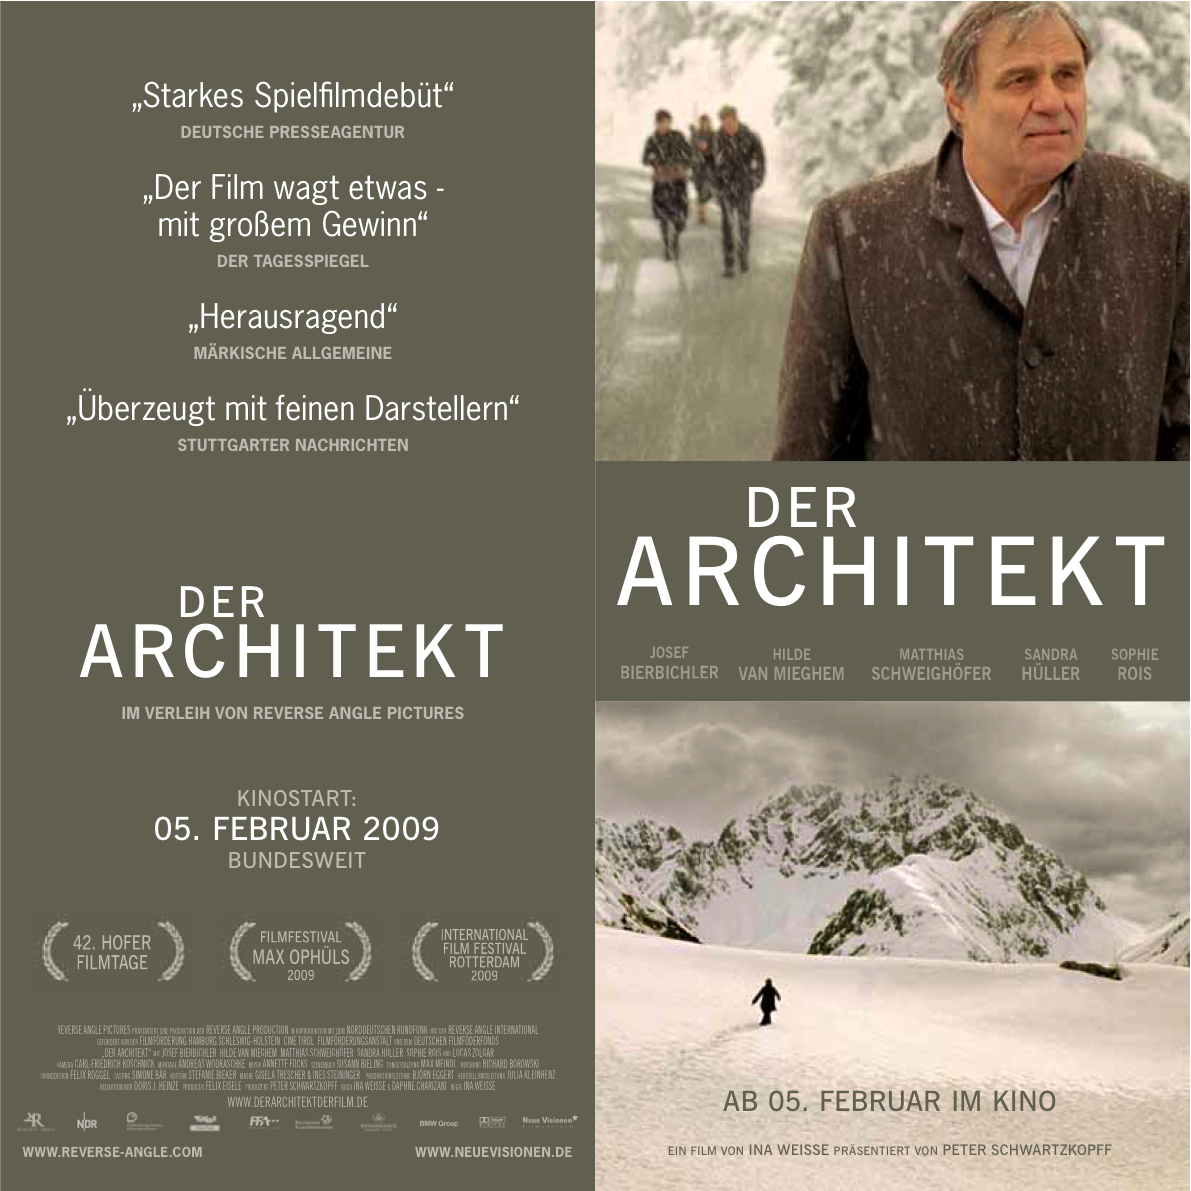 Der Architekt movie